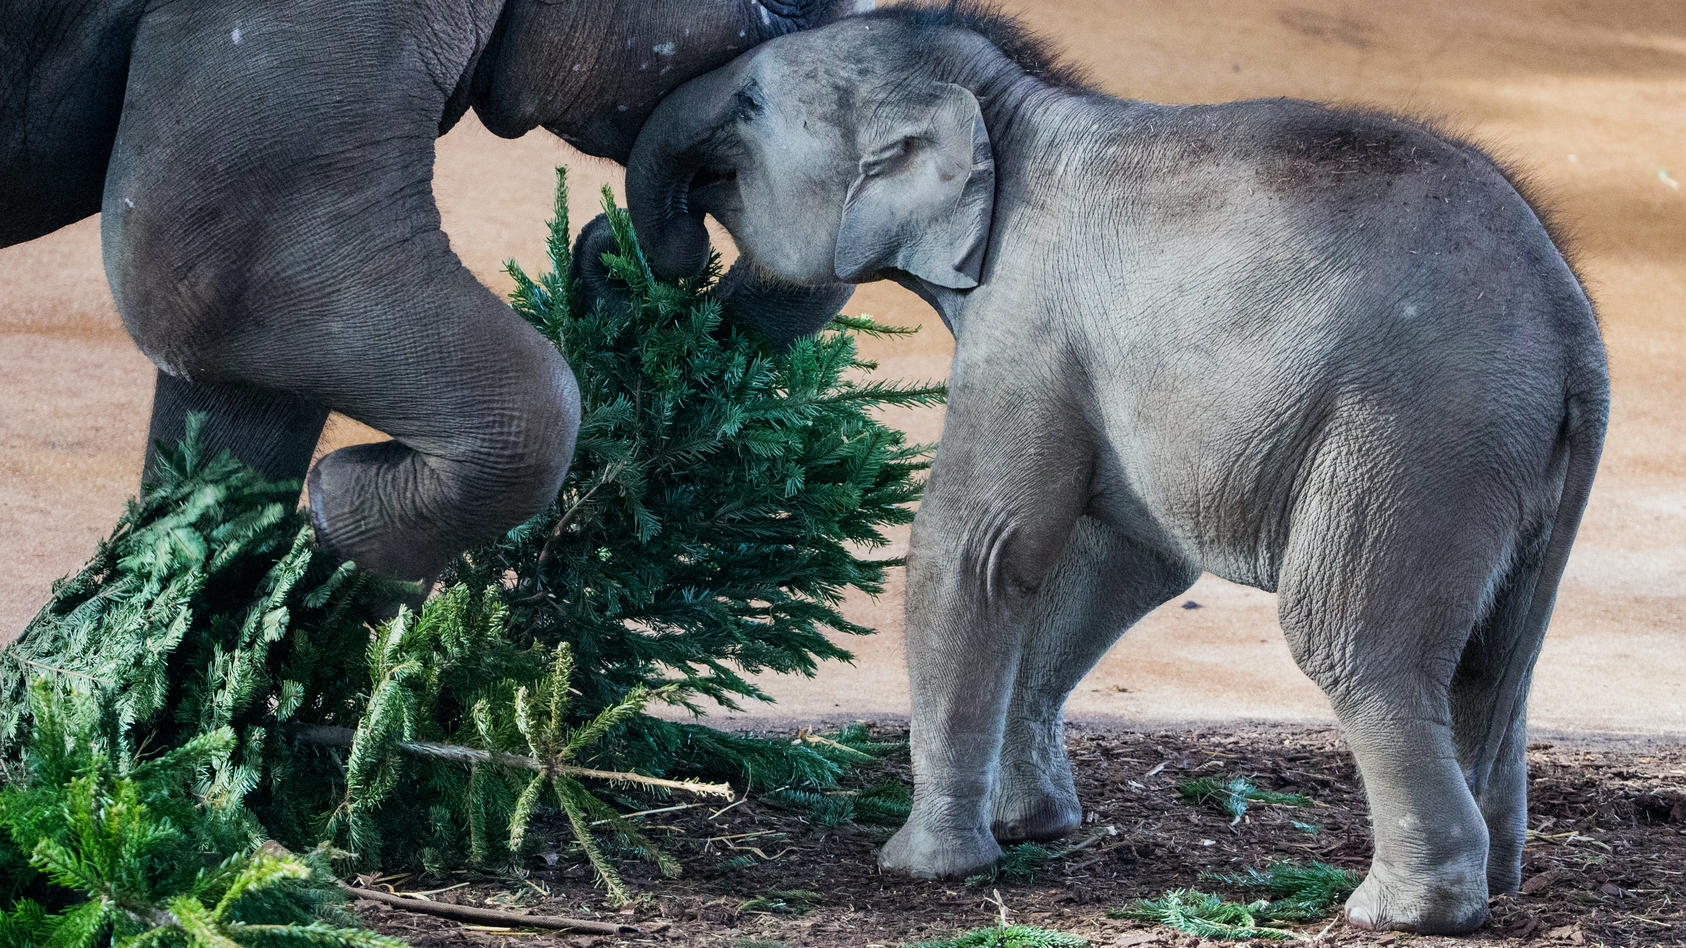 Unverkaufte Weihnachtsbäume landen in Zoos, wo sie für Elefanten und Co. ein besonderer Leckerbissen sind.